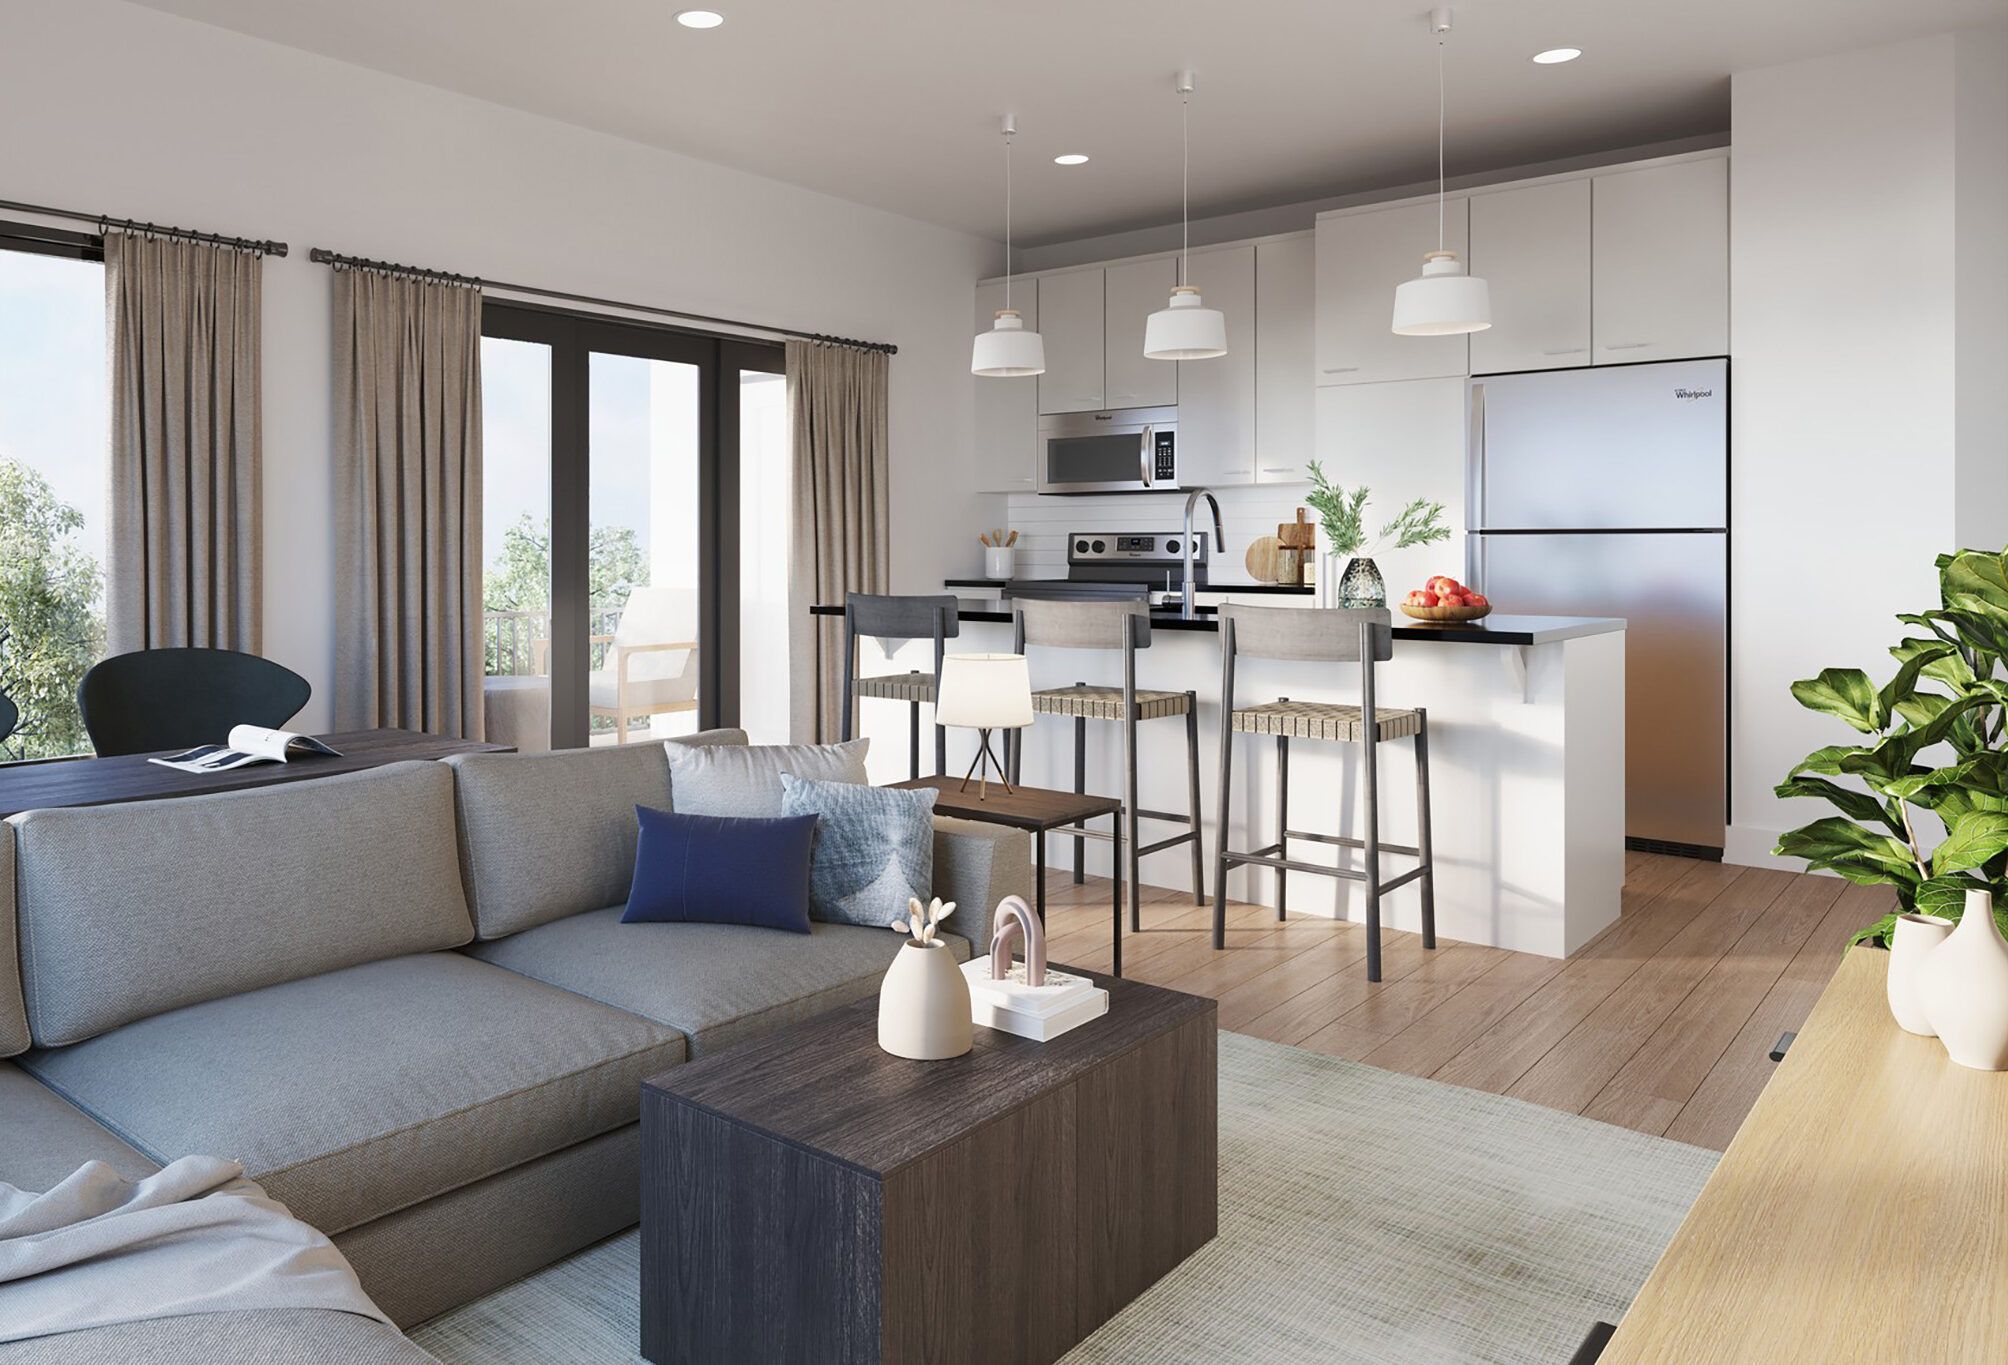 Wexford apartments interior kitchen rendering